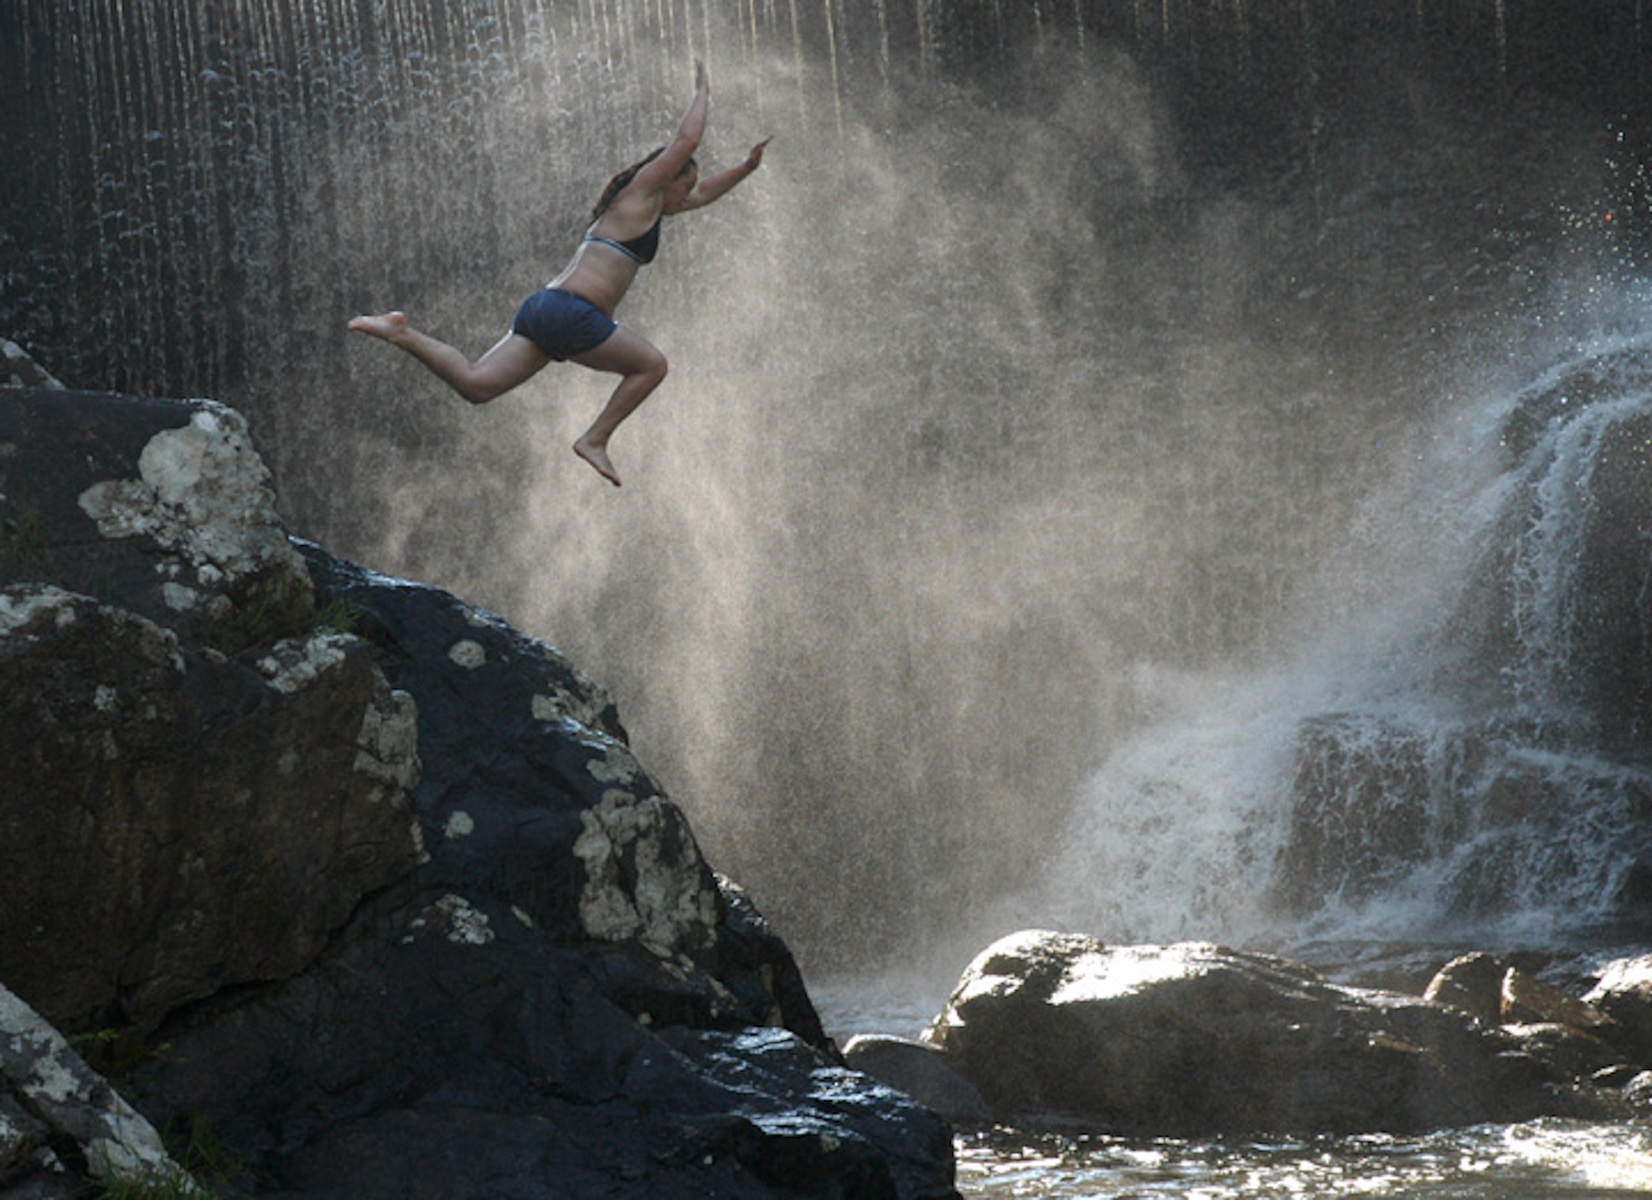 Ashley Jones z West Springfield skacze ze skał na rzece Mill.